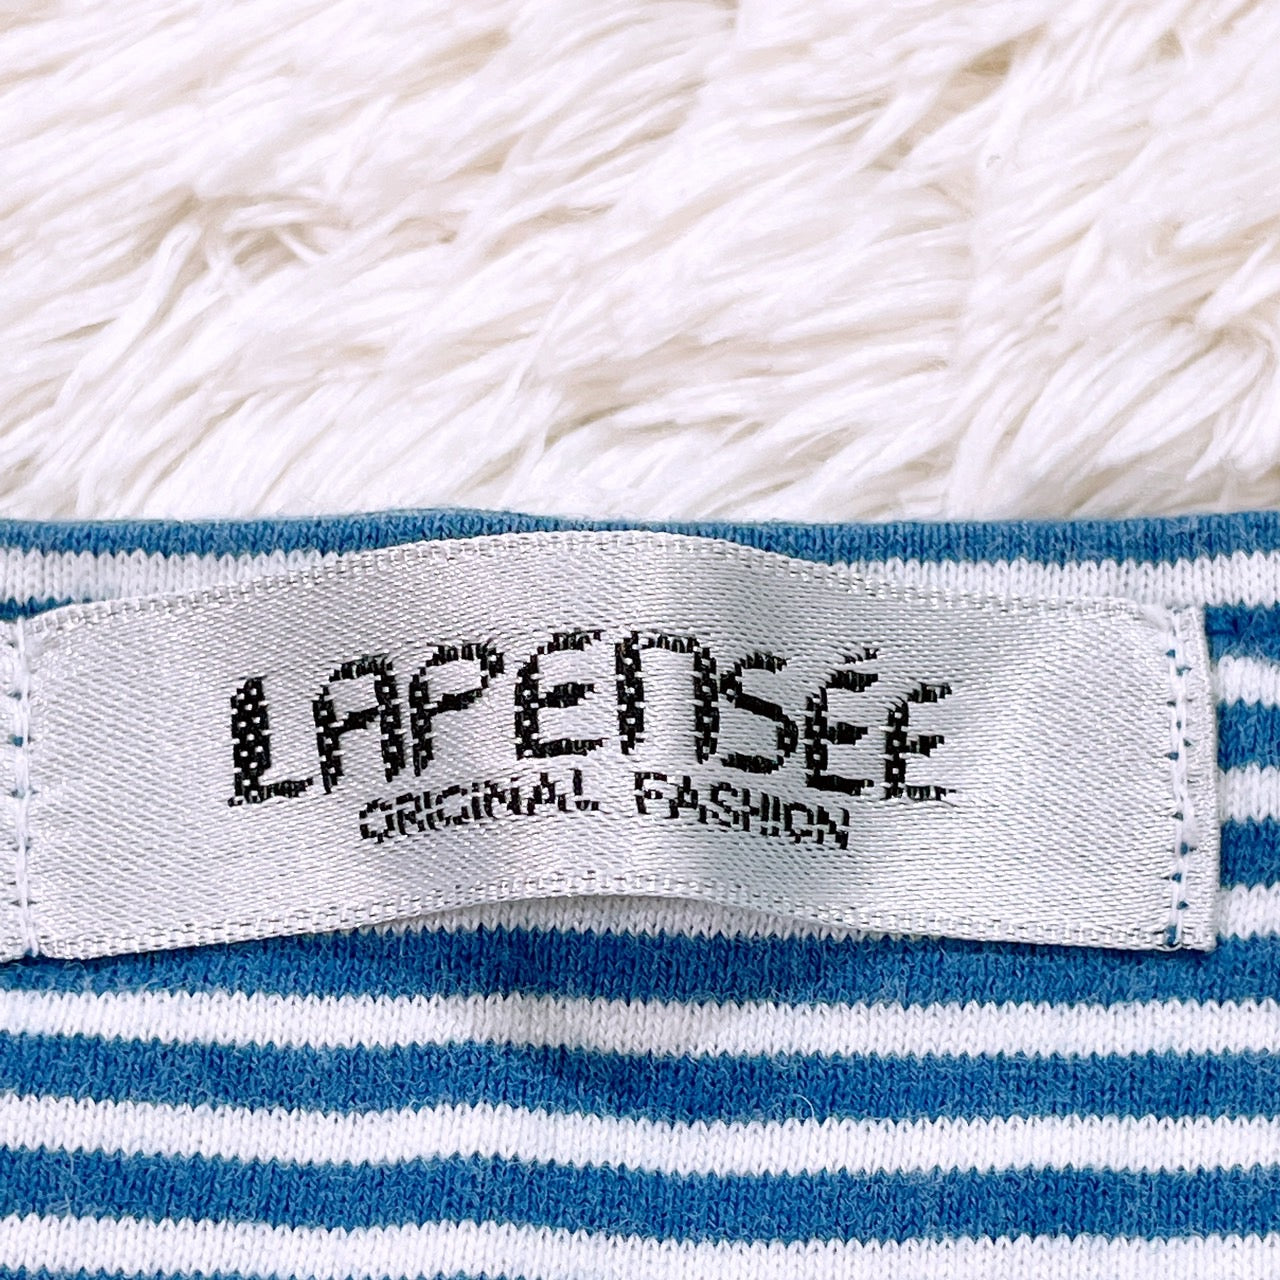 【25881】 LAPENSEE ラパンセ タンクトップ サイズM-L ブルー ノースリーブシャツ スクエアネック ボーダー カジュアル レディース